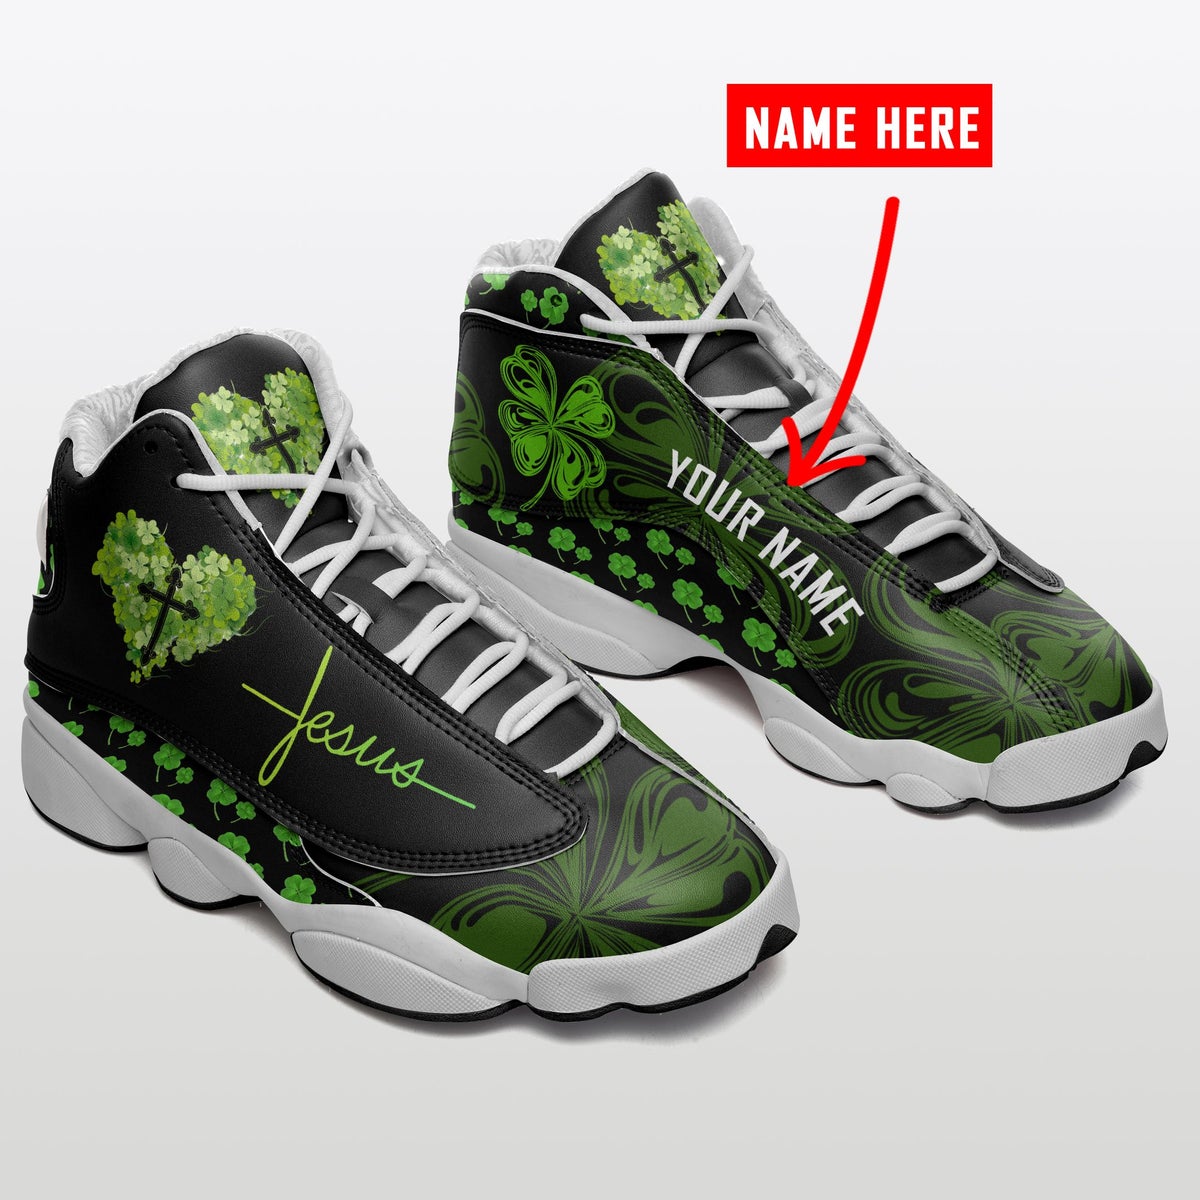 Jesus Personalized Name Green Cross Patrick's Day Air Jordan 13 Shoes - Men's Air Jordan 13 - Green